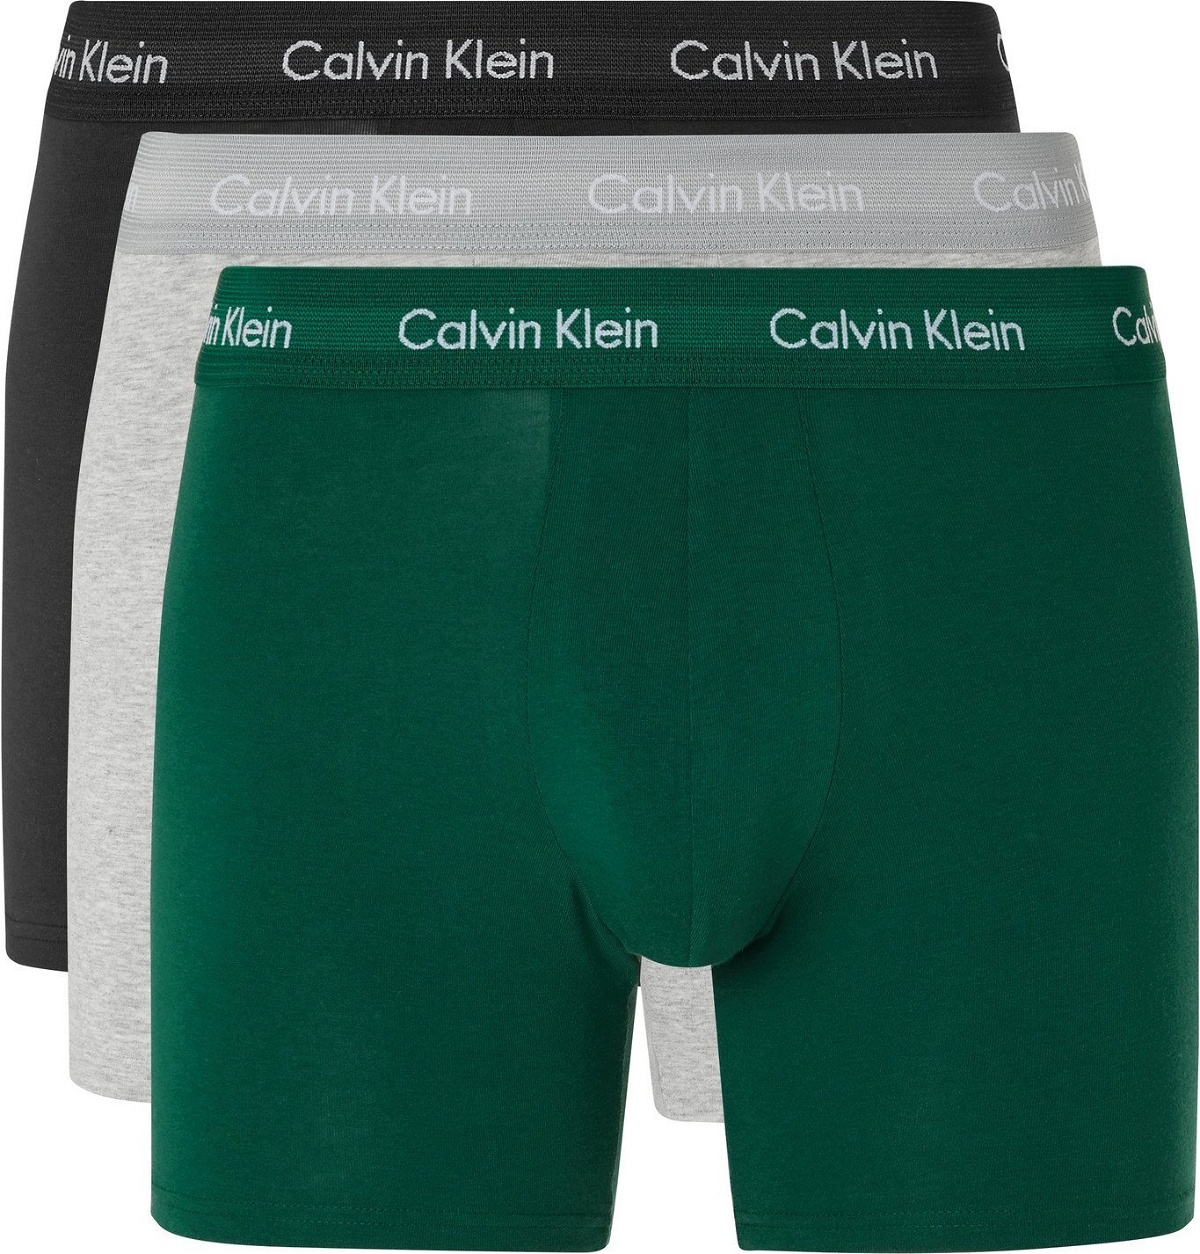 Boxer Briefs Calvin Klein Underwear